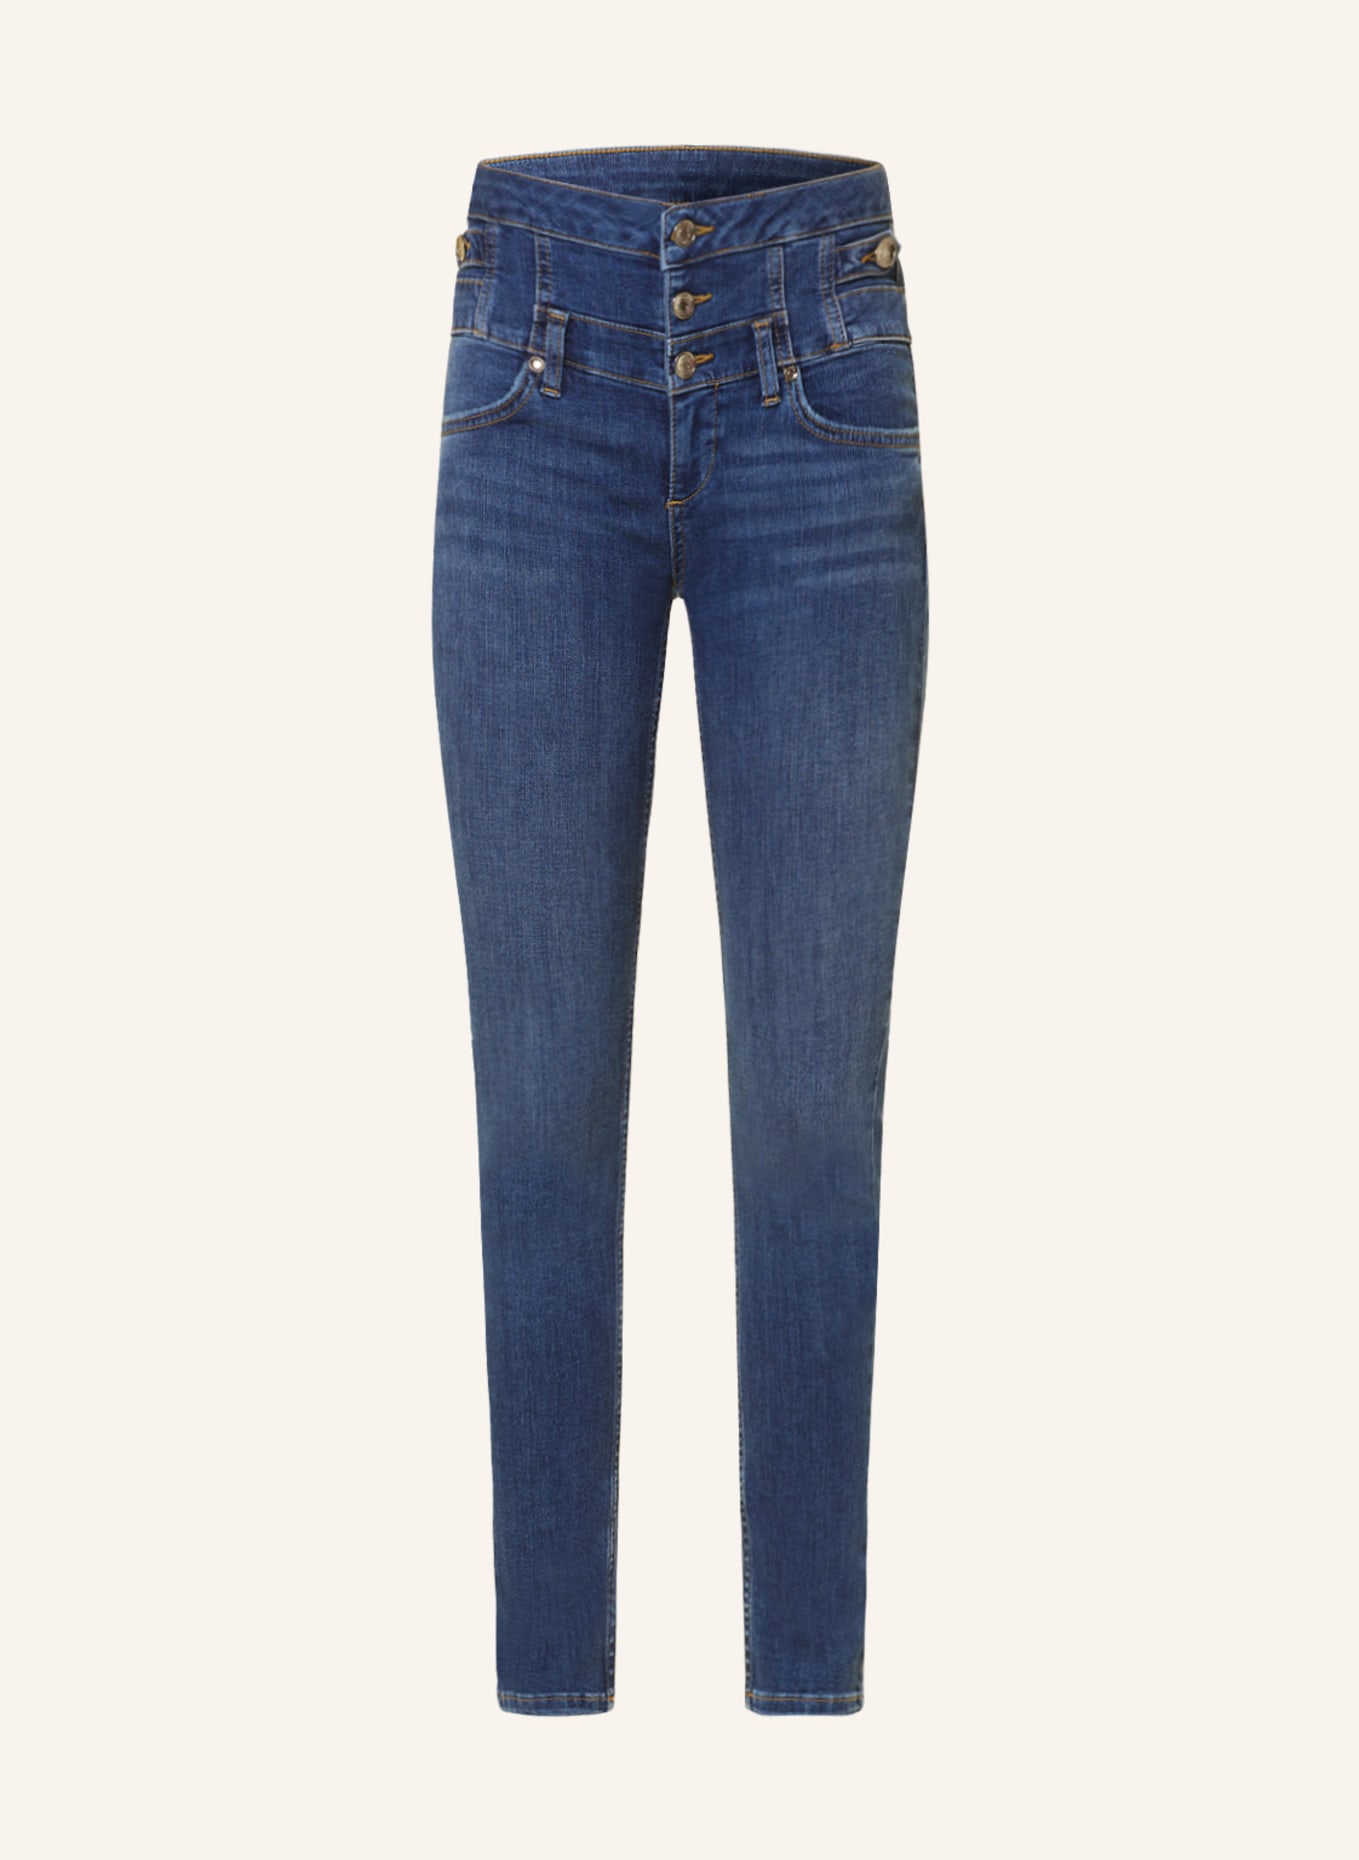 LIU JO Skinny Jeans, Farbe: 78525 Den.Blue dk match wa (Bild 1)